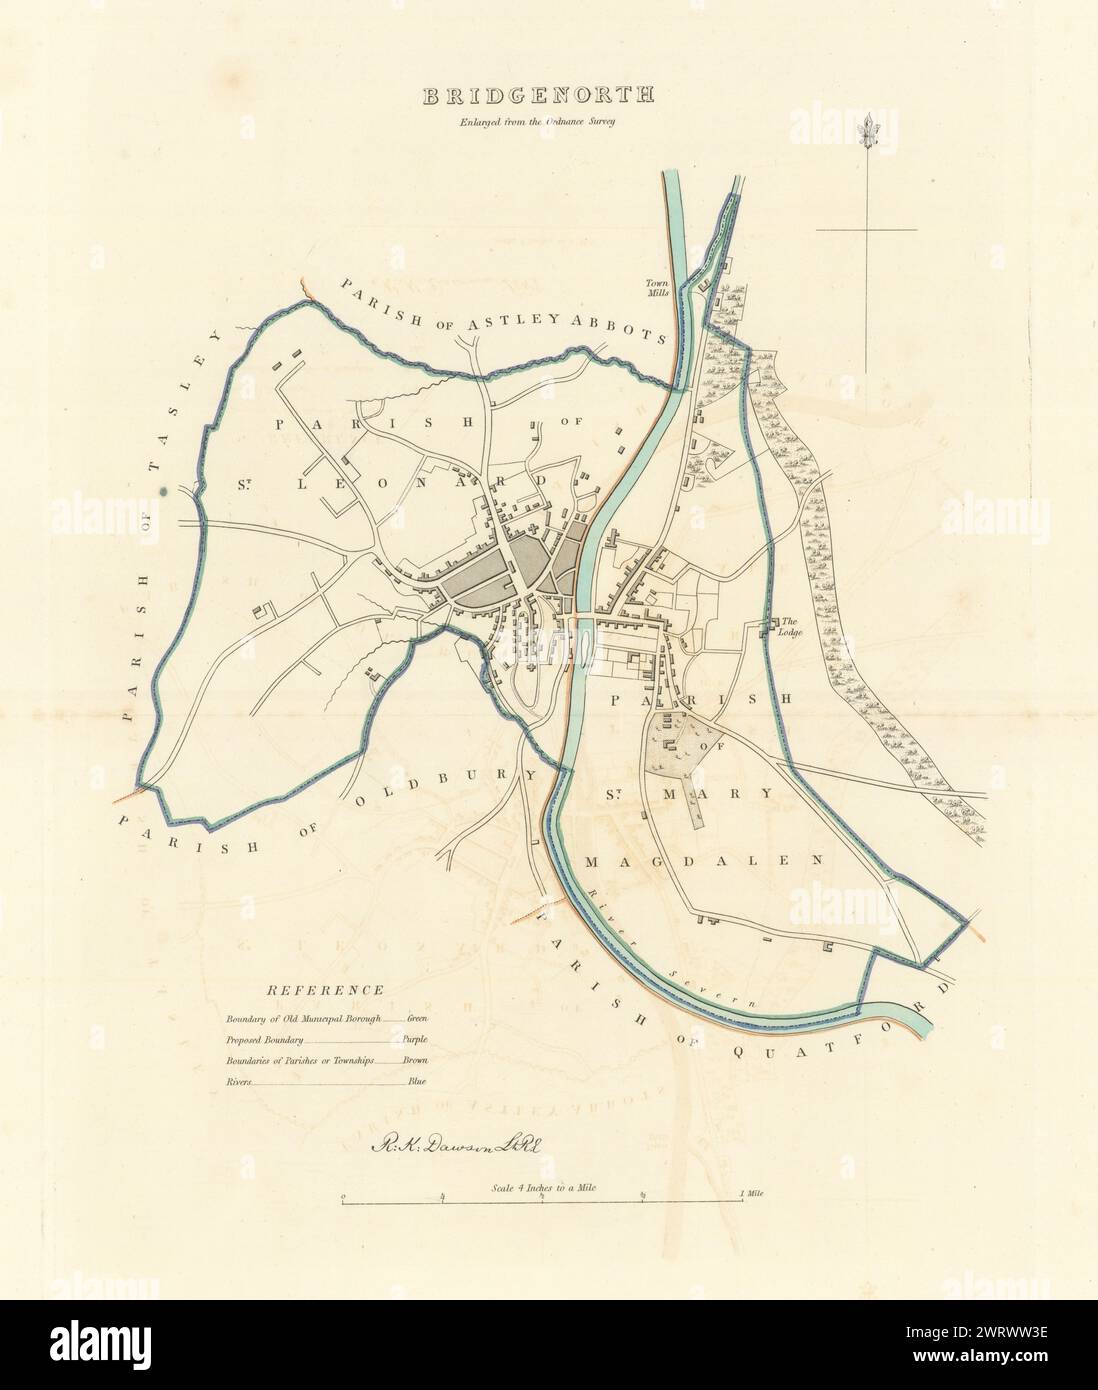 BRIDGNORTH Gemeinde/Stadt planen. Grenzkommission. Shropshire. DAWSON 1837 Karte Stockfoto